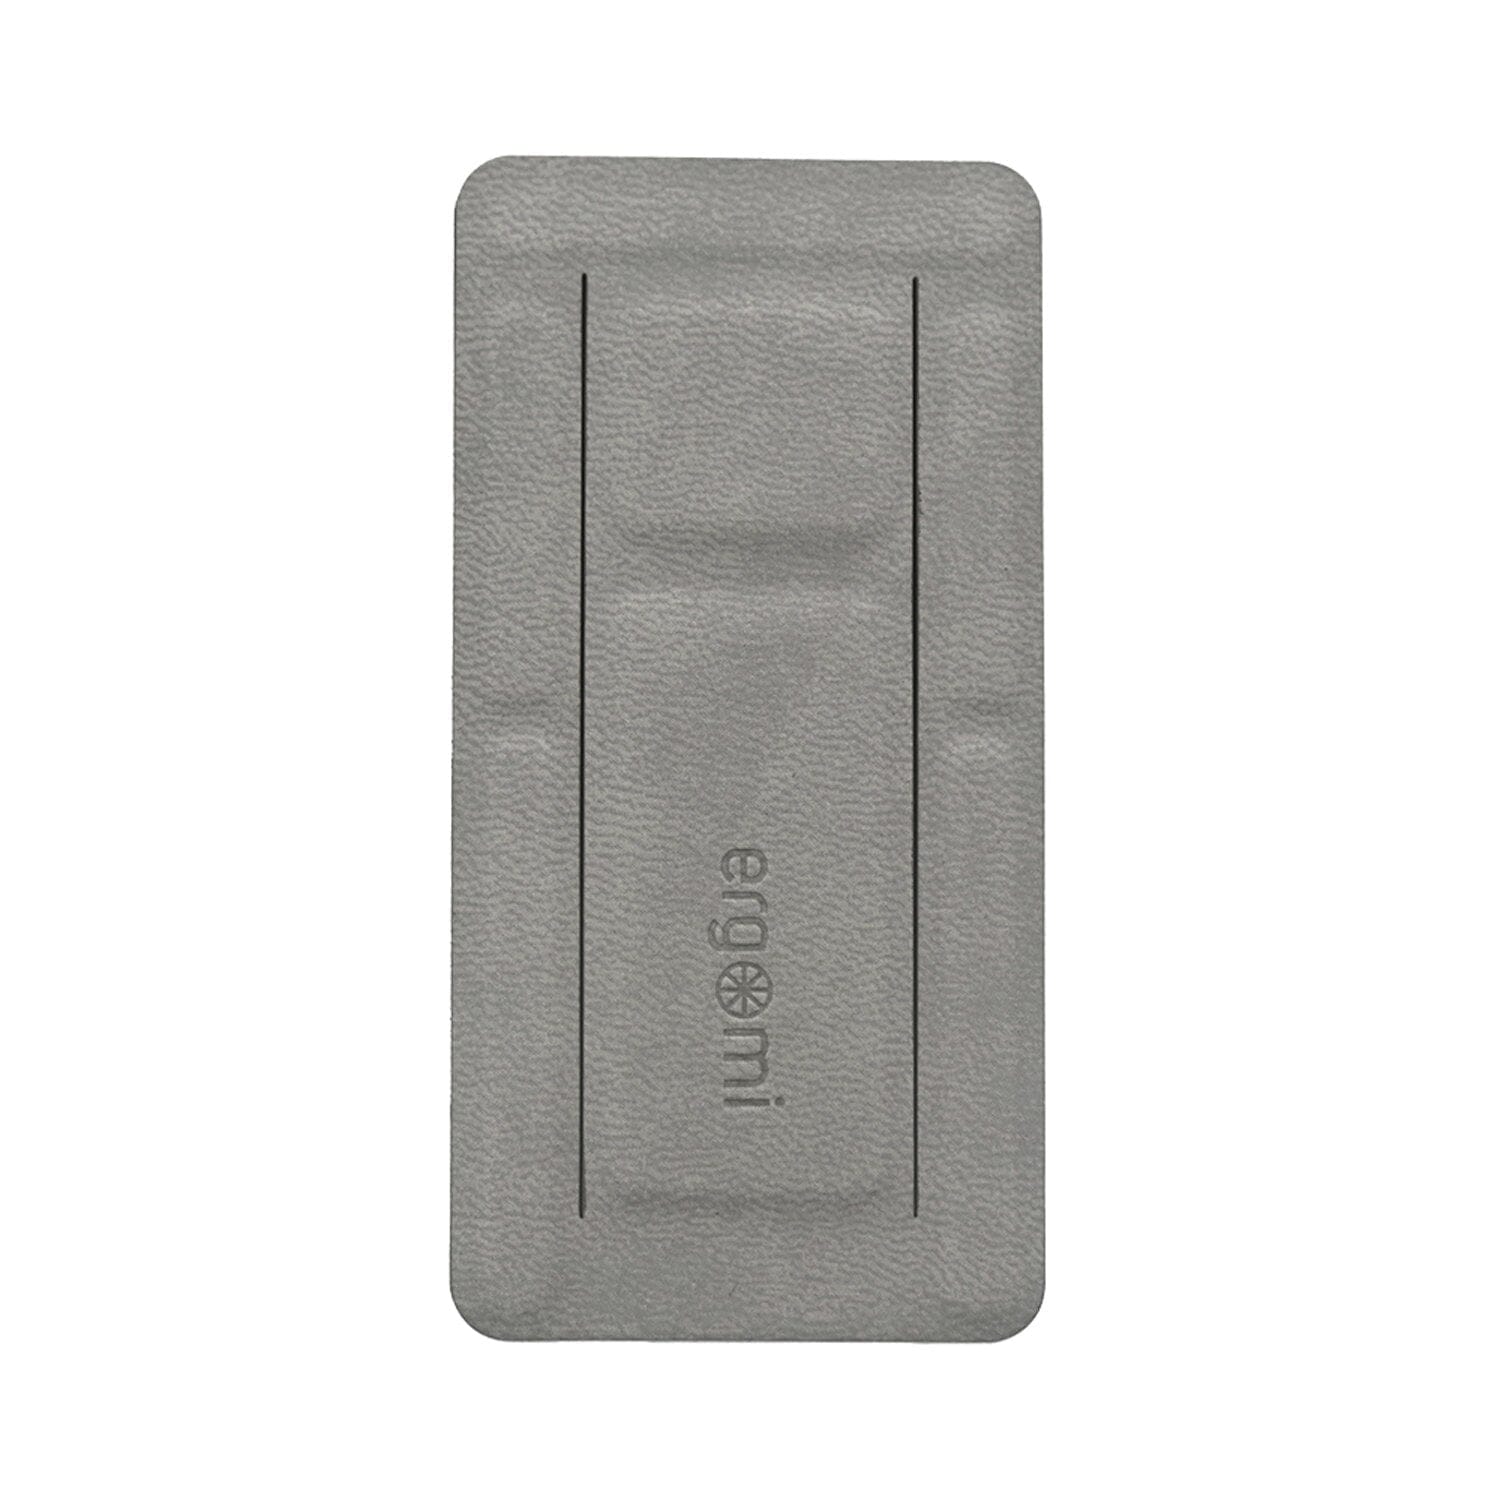 Ergomi Hercules Grip Adhesive Phone Stand Phone Stand Ergomi Grey 